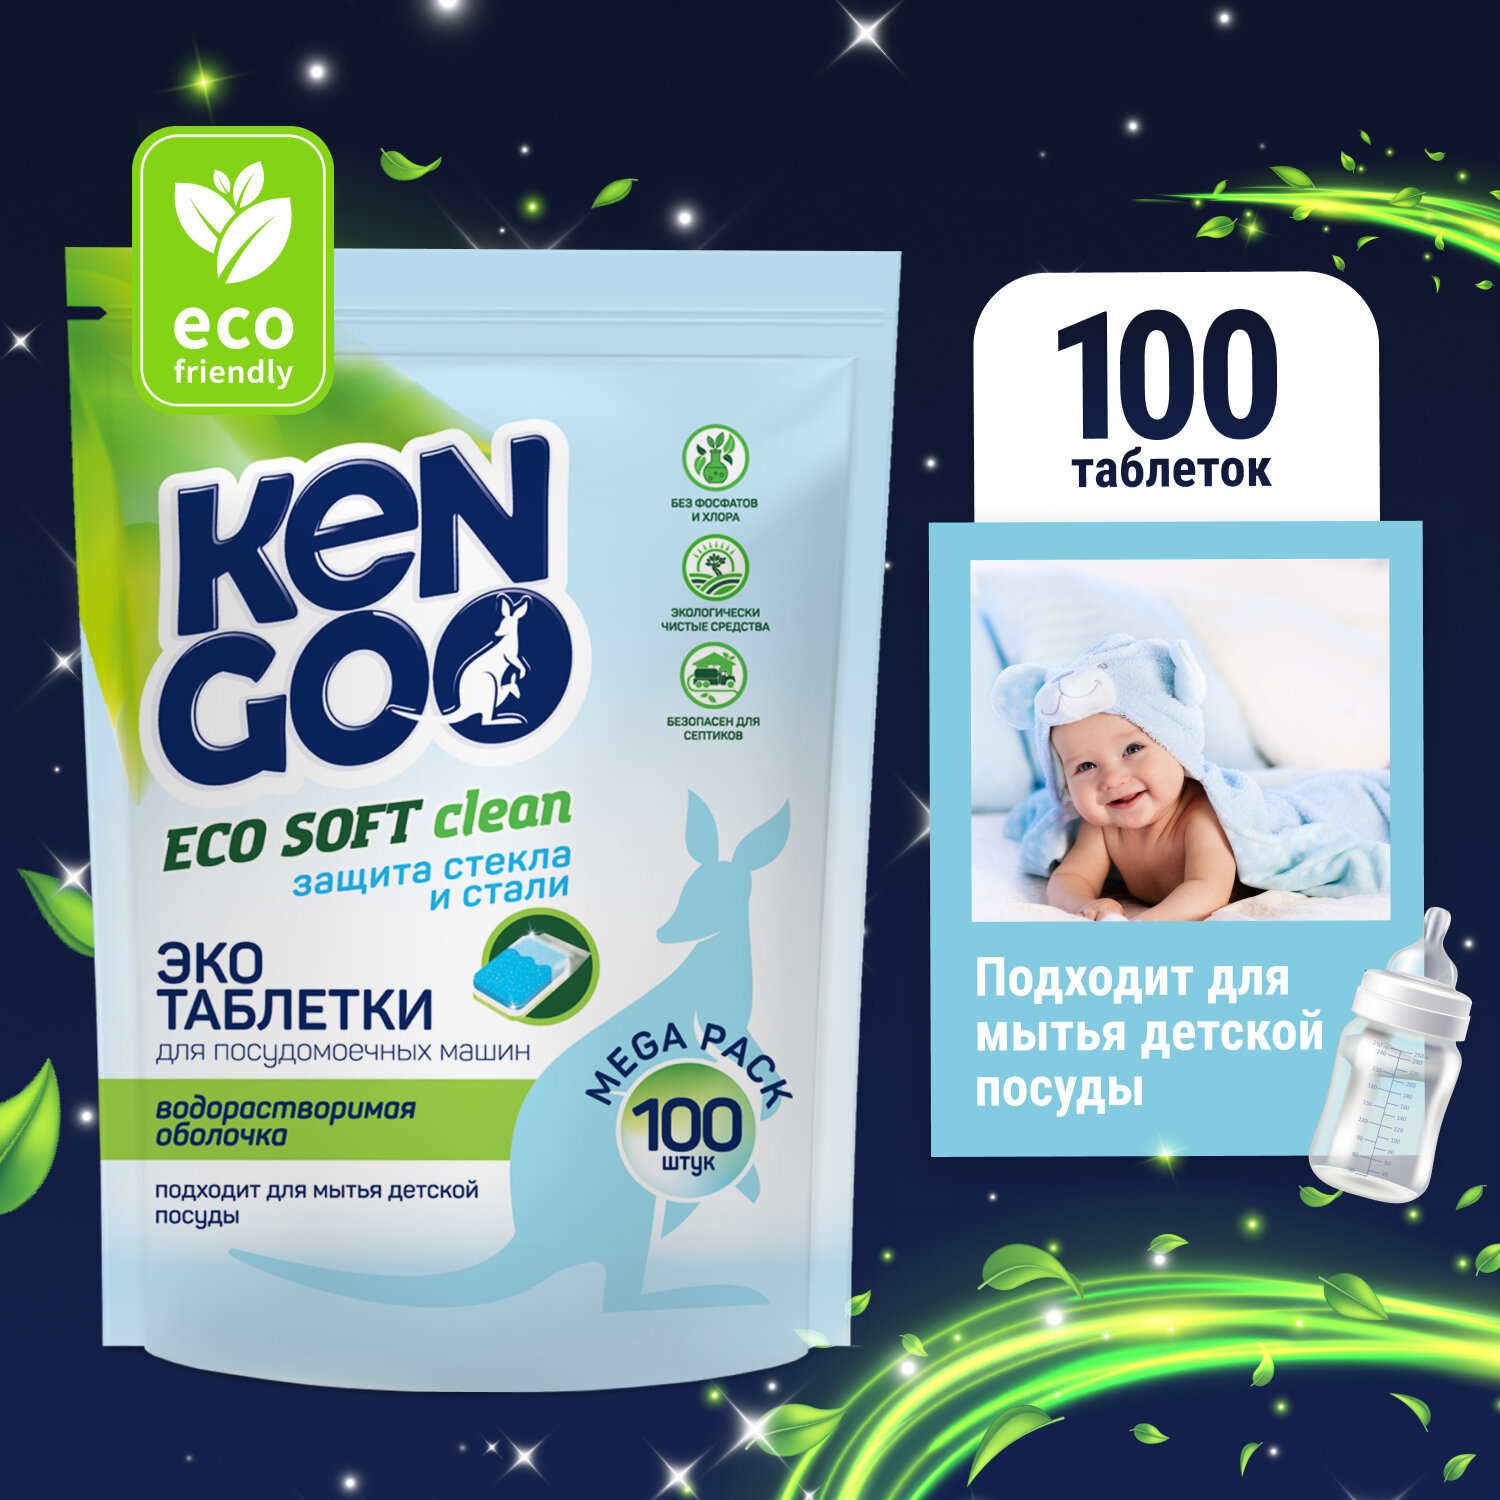 Таблетки для посудомоечной машины Kengoo Eco Soft Clean водорастворимые для детской посуды, эко, 100 шт